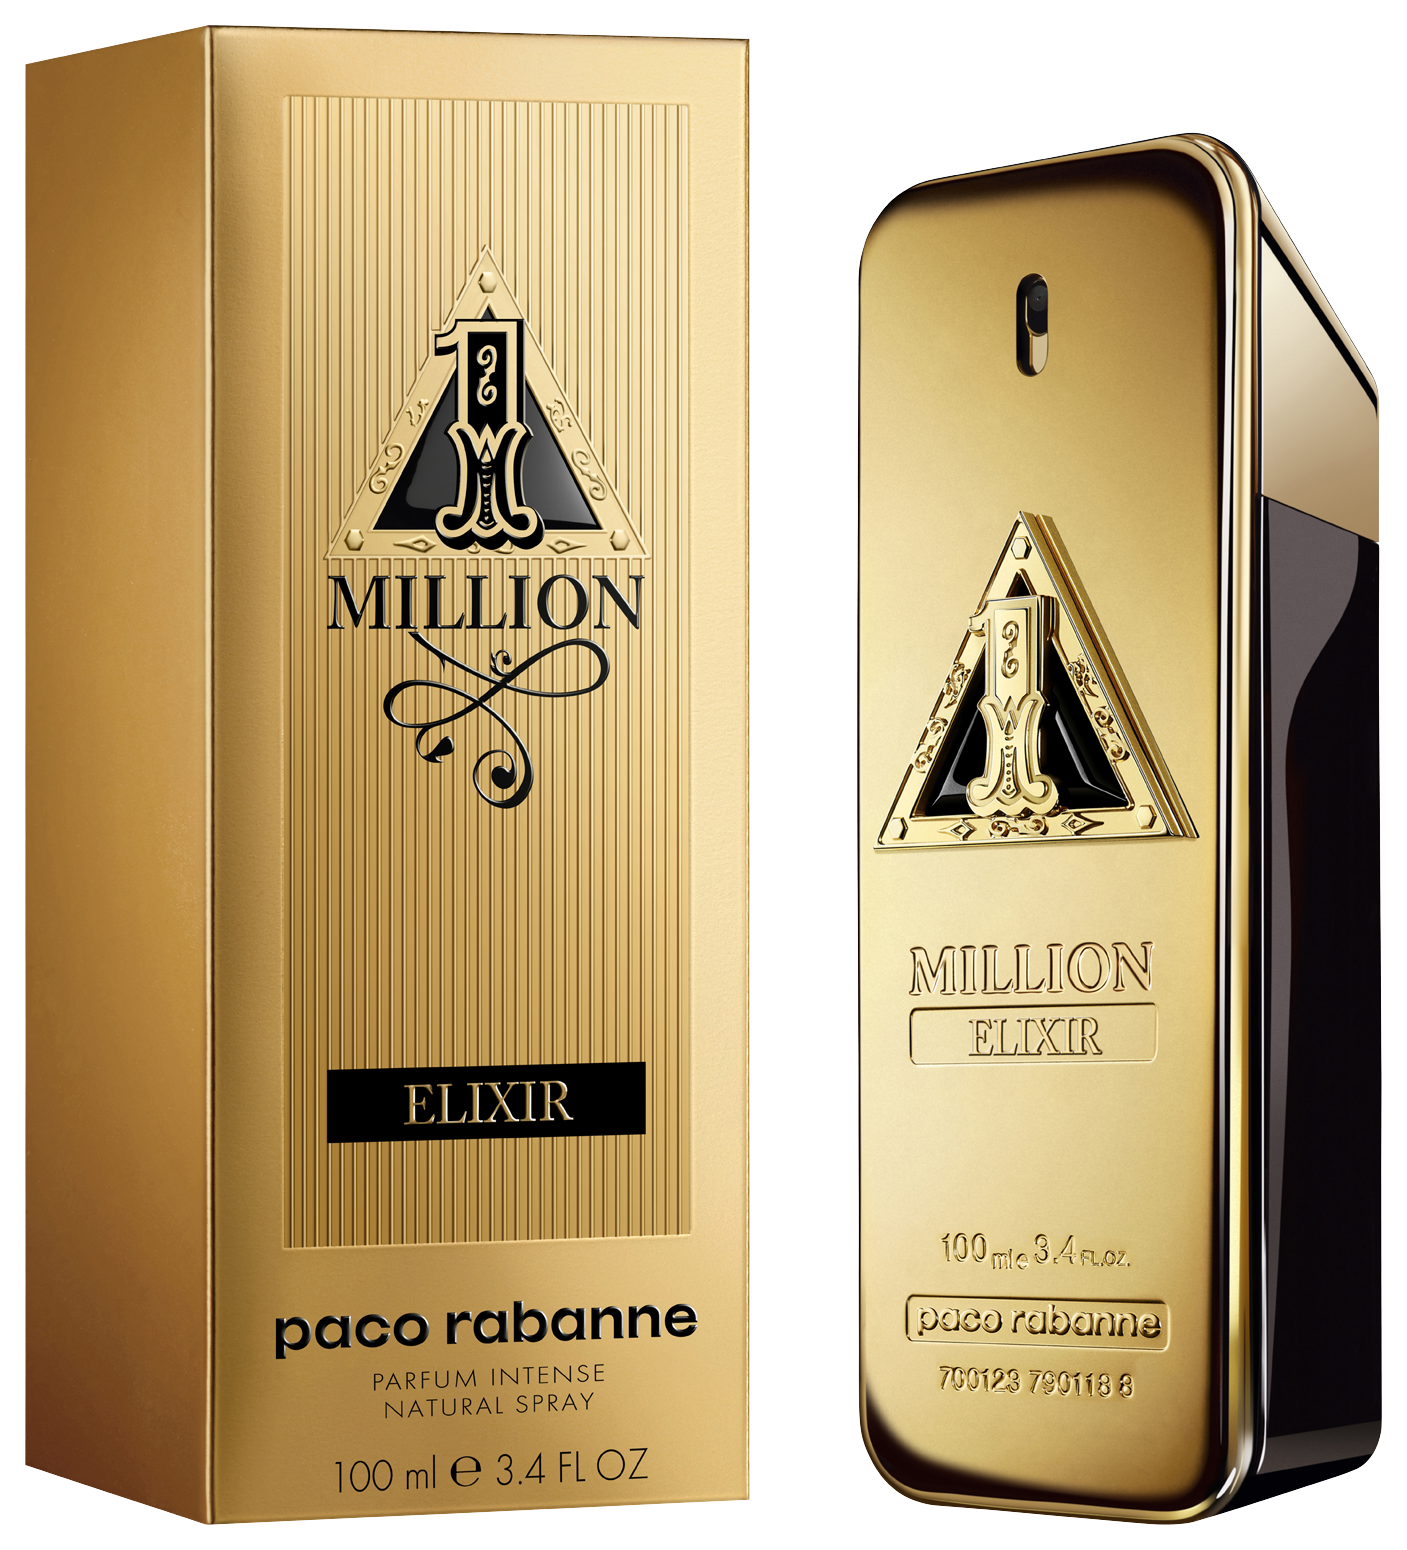 Paco Rabanne 1 Million Elixir Eau de Parfum Intense 100 ml